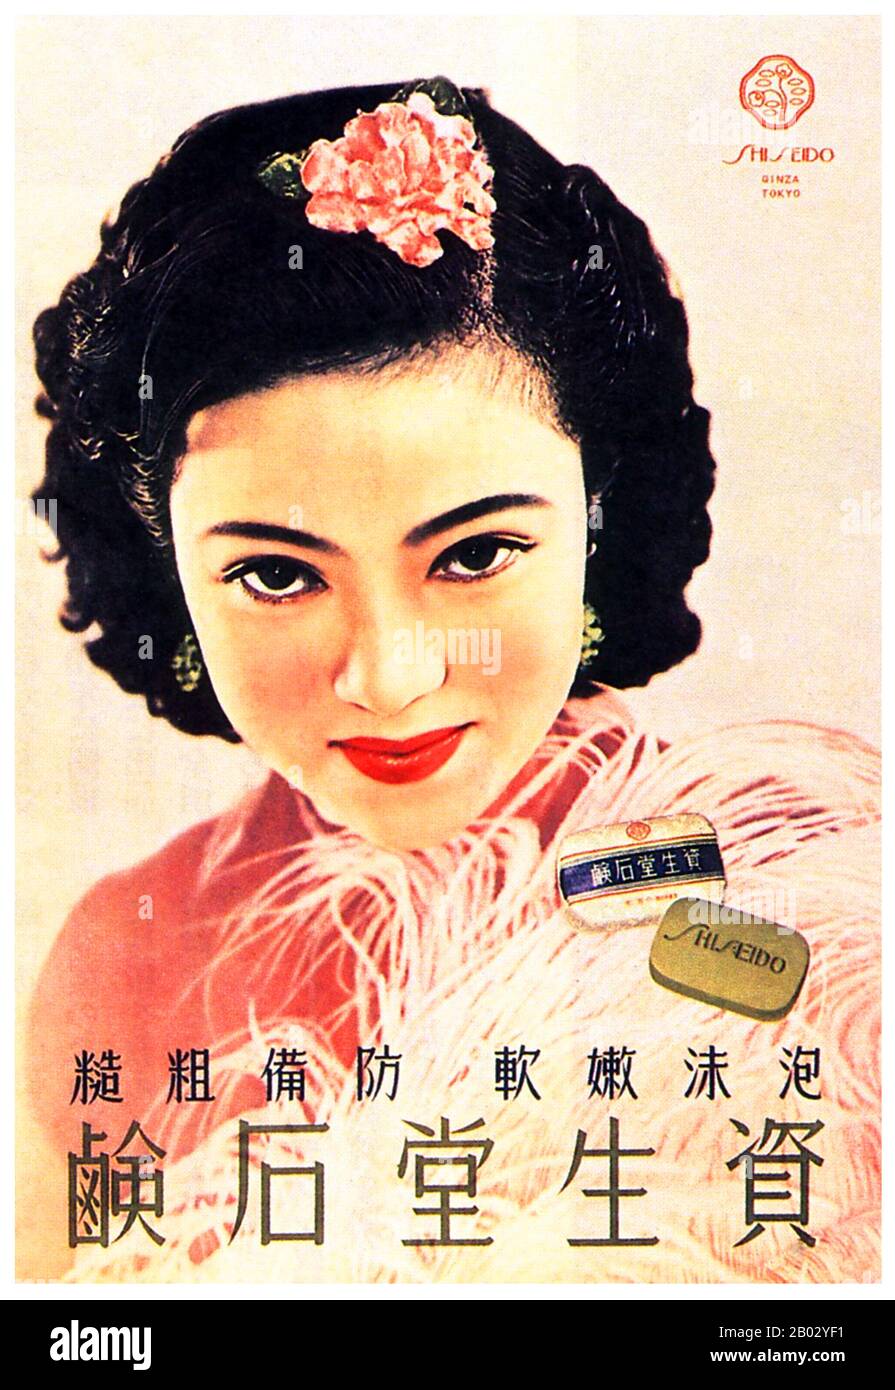 Shiseido est un producteur japonais de soins capillaires et de cosmétiques. C'est l'une des plus anciennes sociétés de cosmétiques au monde. Fondée en 1872, elle a célébré son 140ème anniversaire en 2012. C'est la plus grande entreprise de cosmétiques au Japon et la quatrième plus grande société de cosmétiques au monde. Banque D'Images